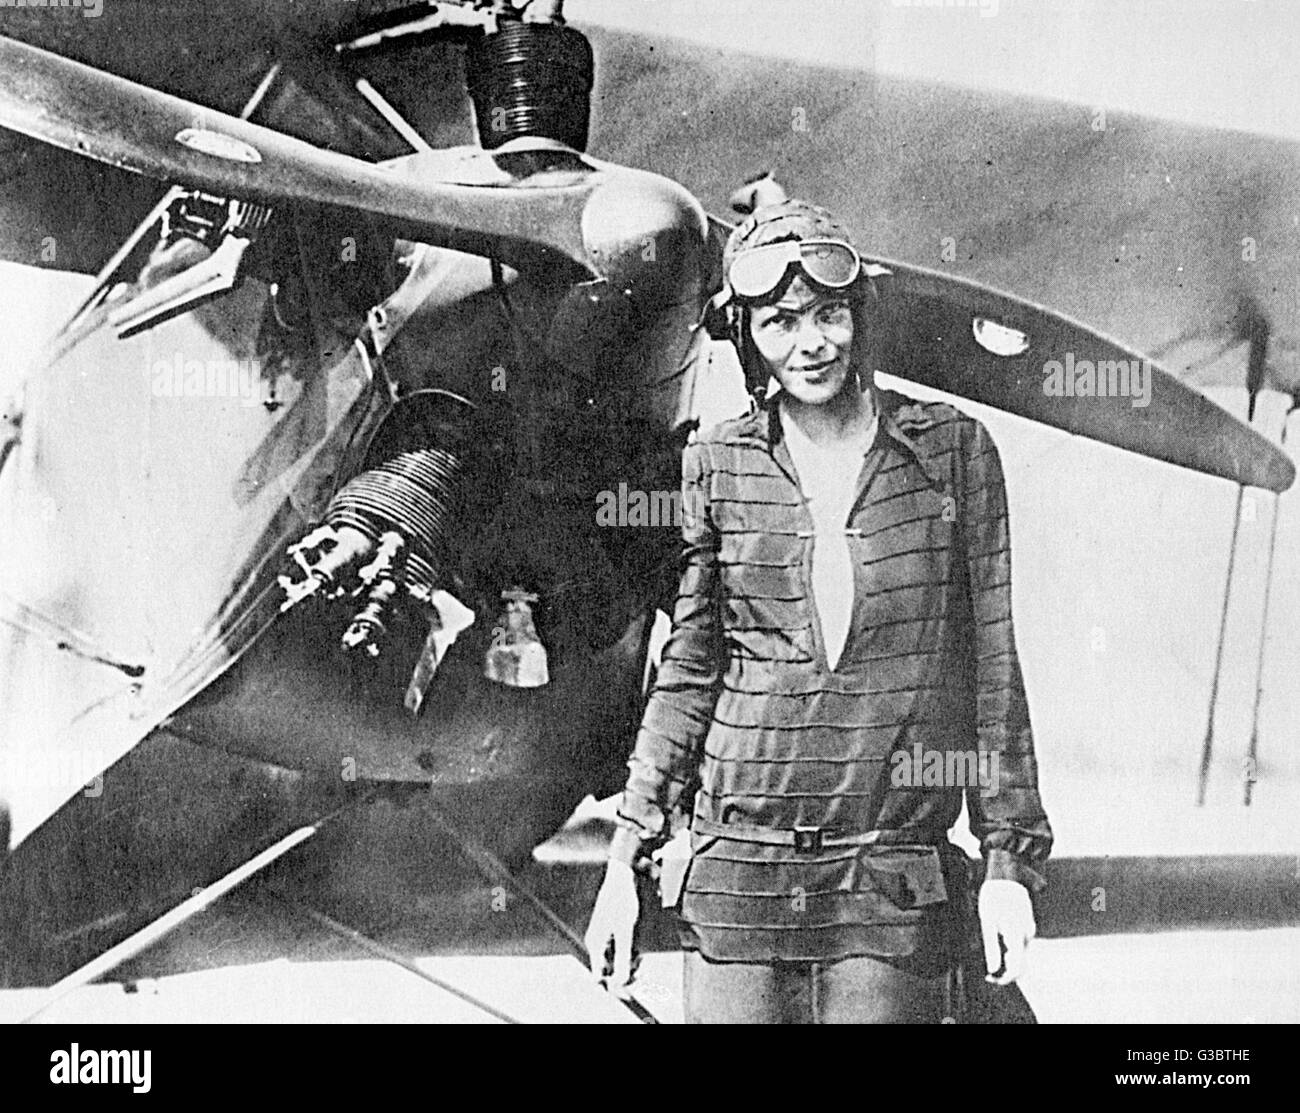 Mary Amelia Earhart (1897-1937), aviateur pionnier américain, debout devant son avion. Date : vers 1930 Banque D'Images